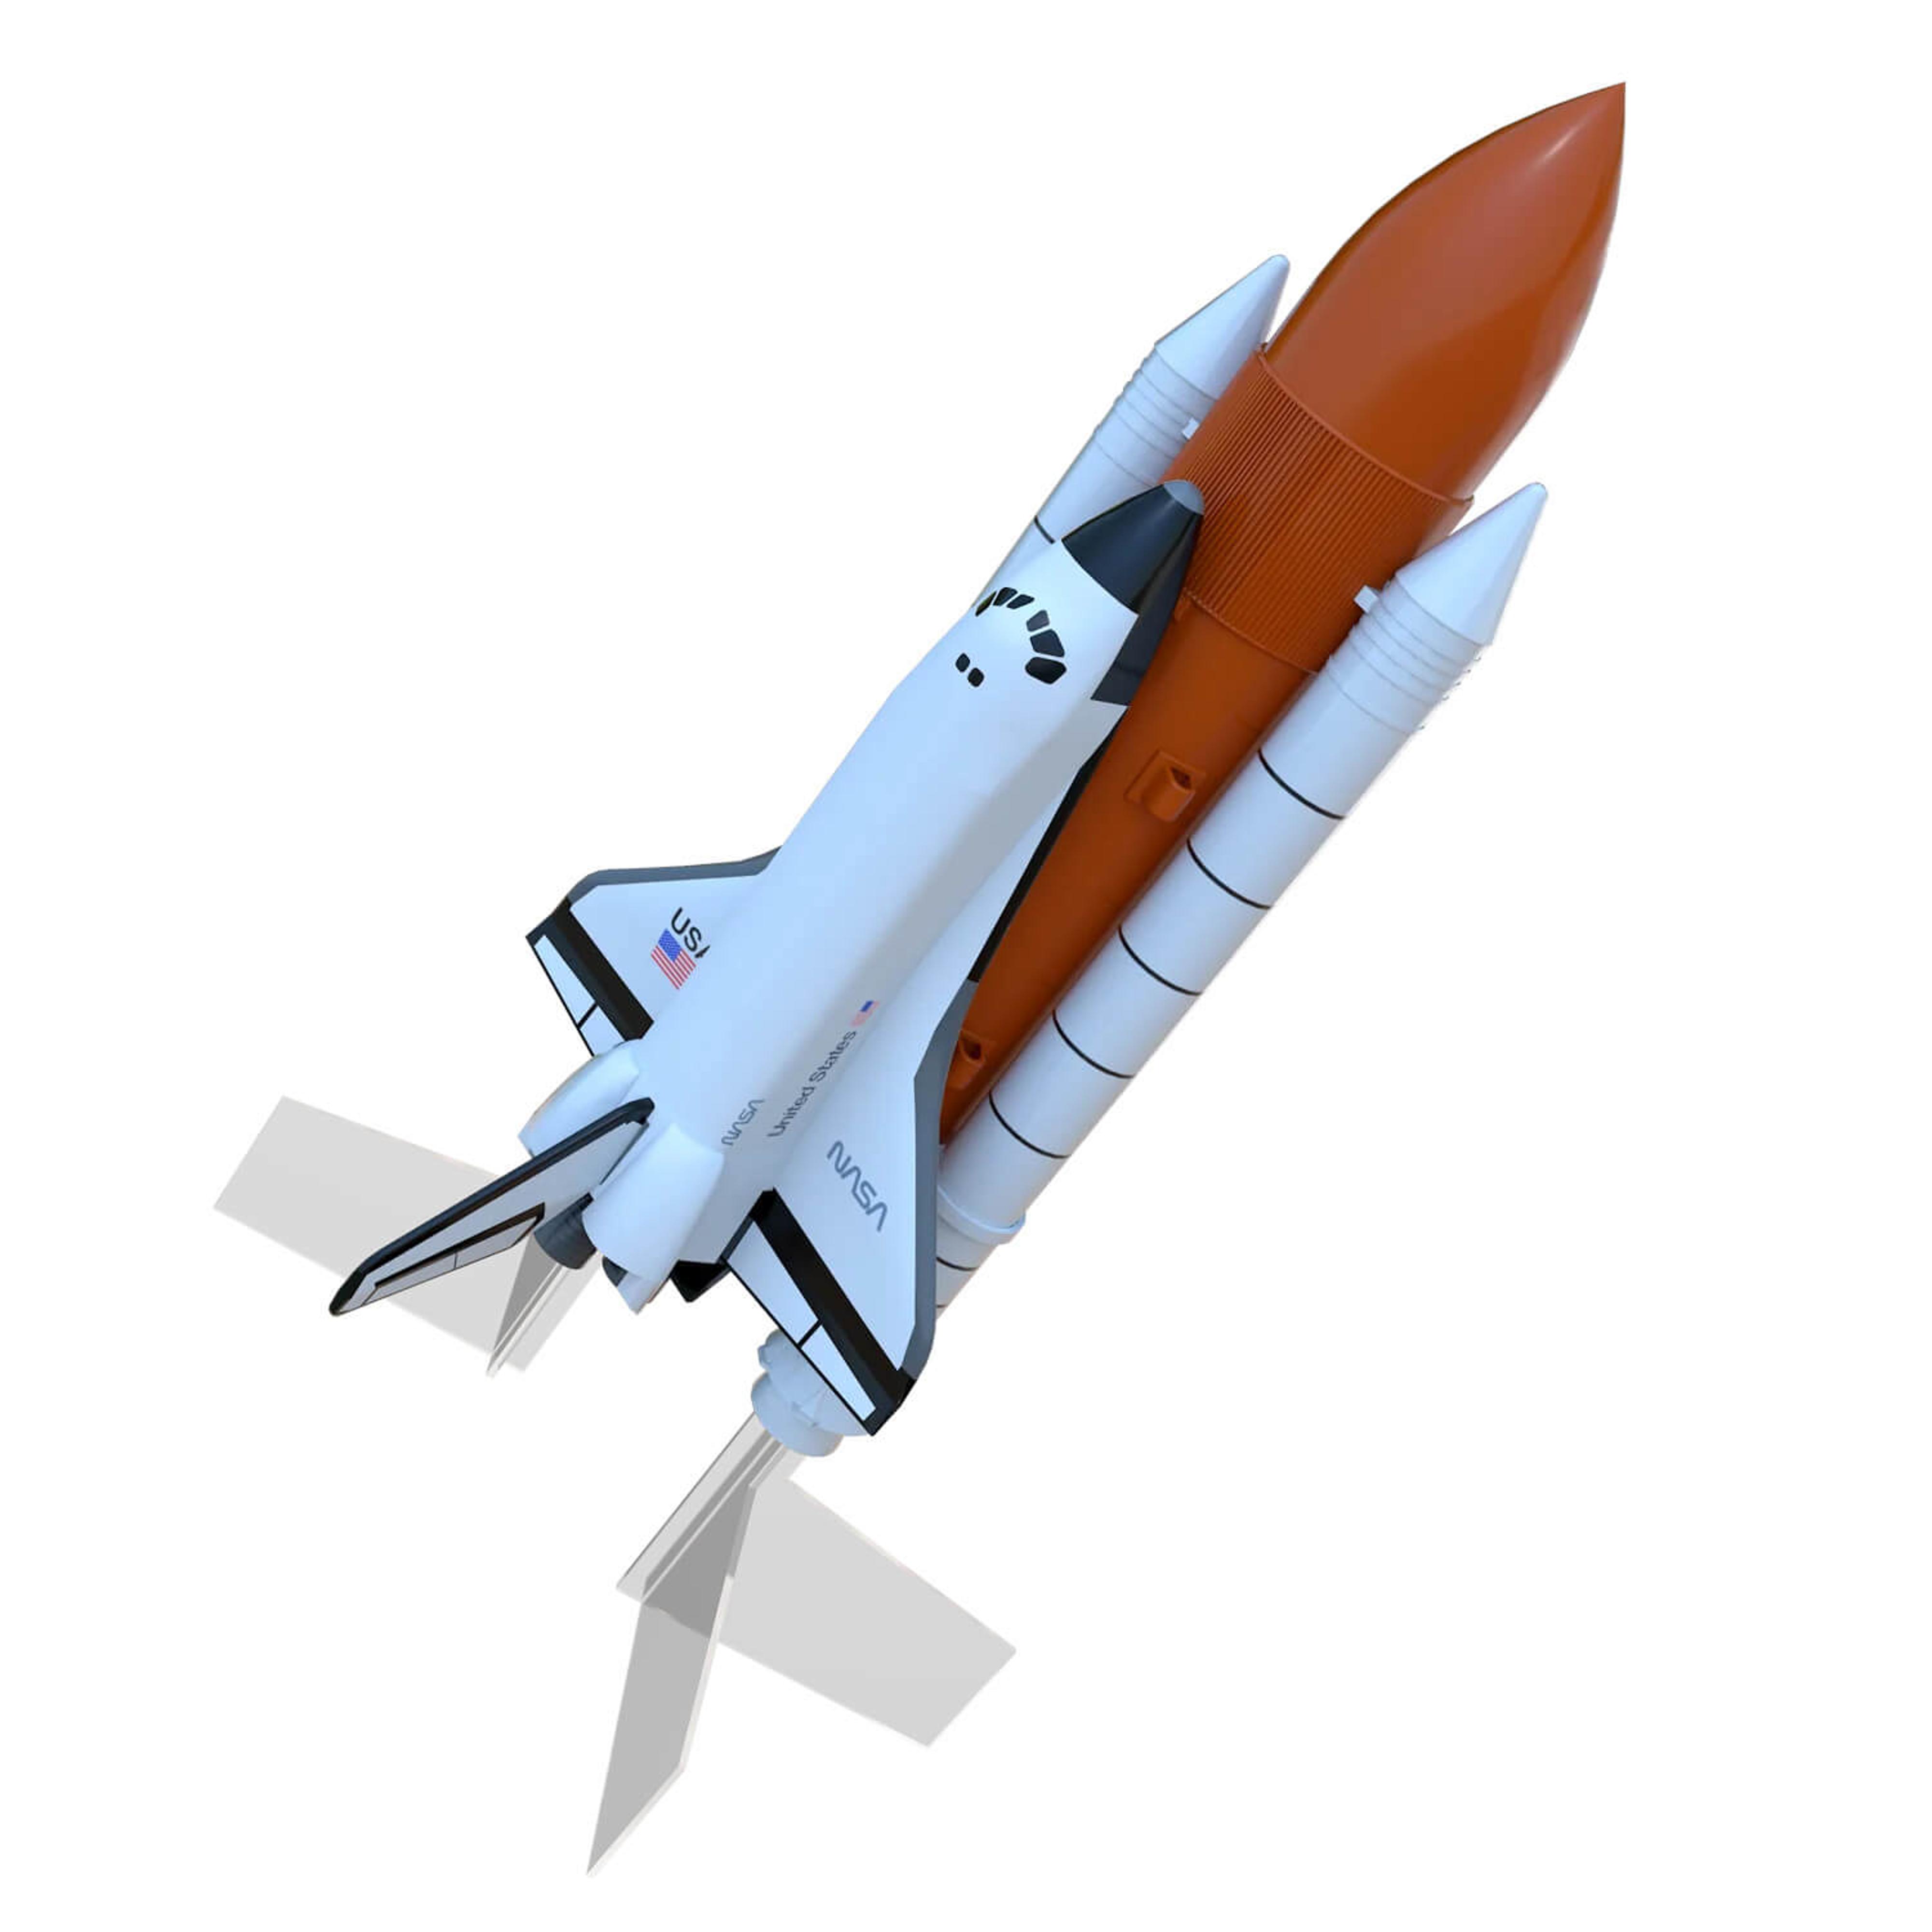 Space Shuttle Rocket